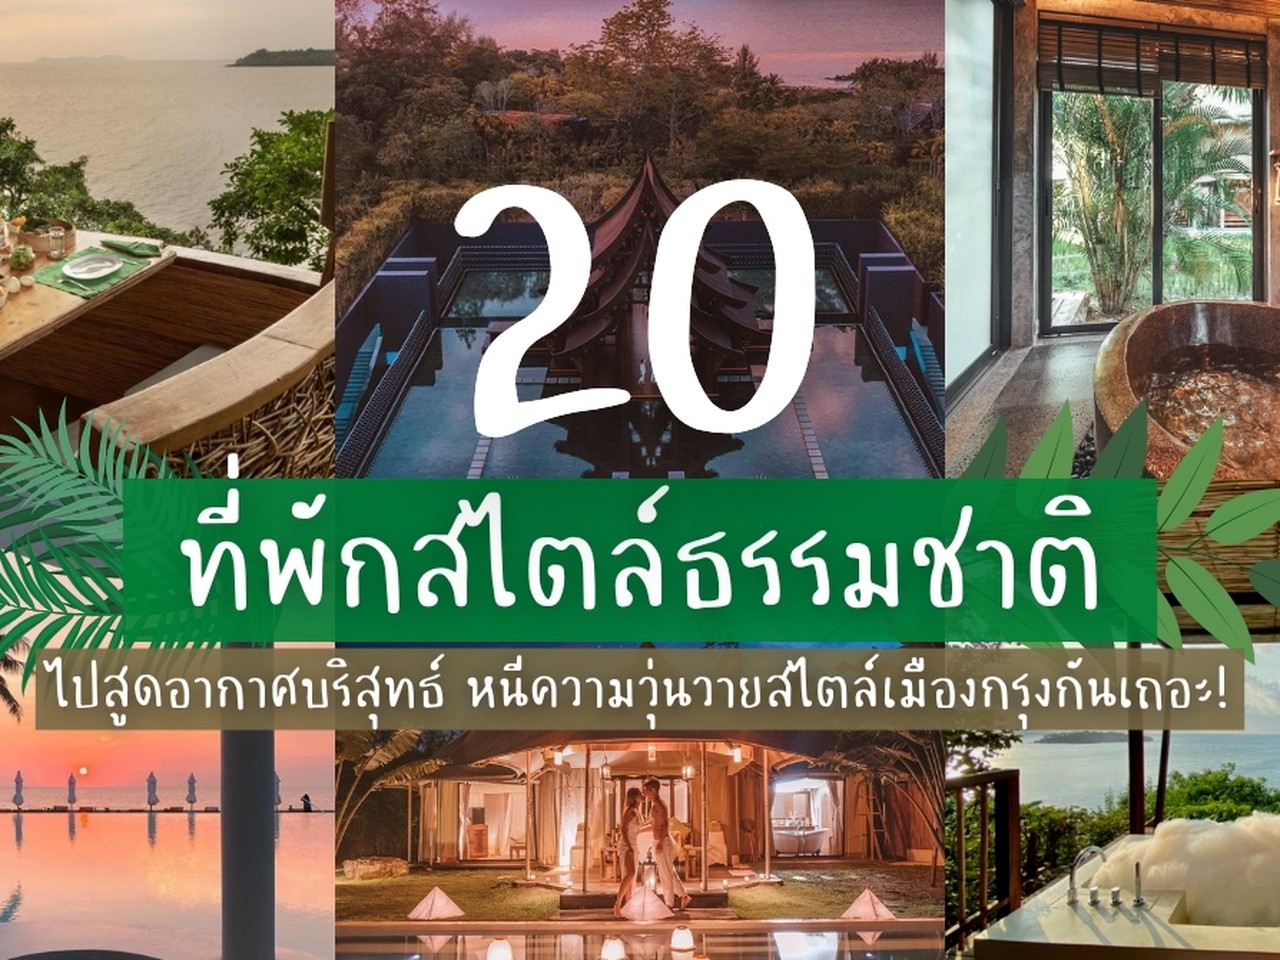 20 ที่พักสไตล์ธรรมชาติ ไปสูดอากาศบริสุทธิ์ หนีความวุ่นวายในเมือง | Siam2nite